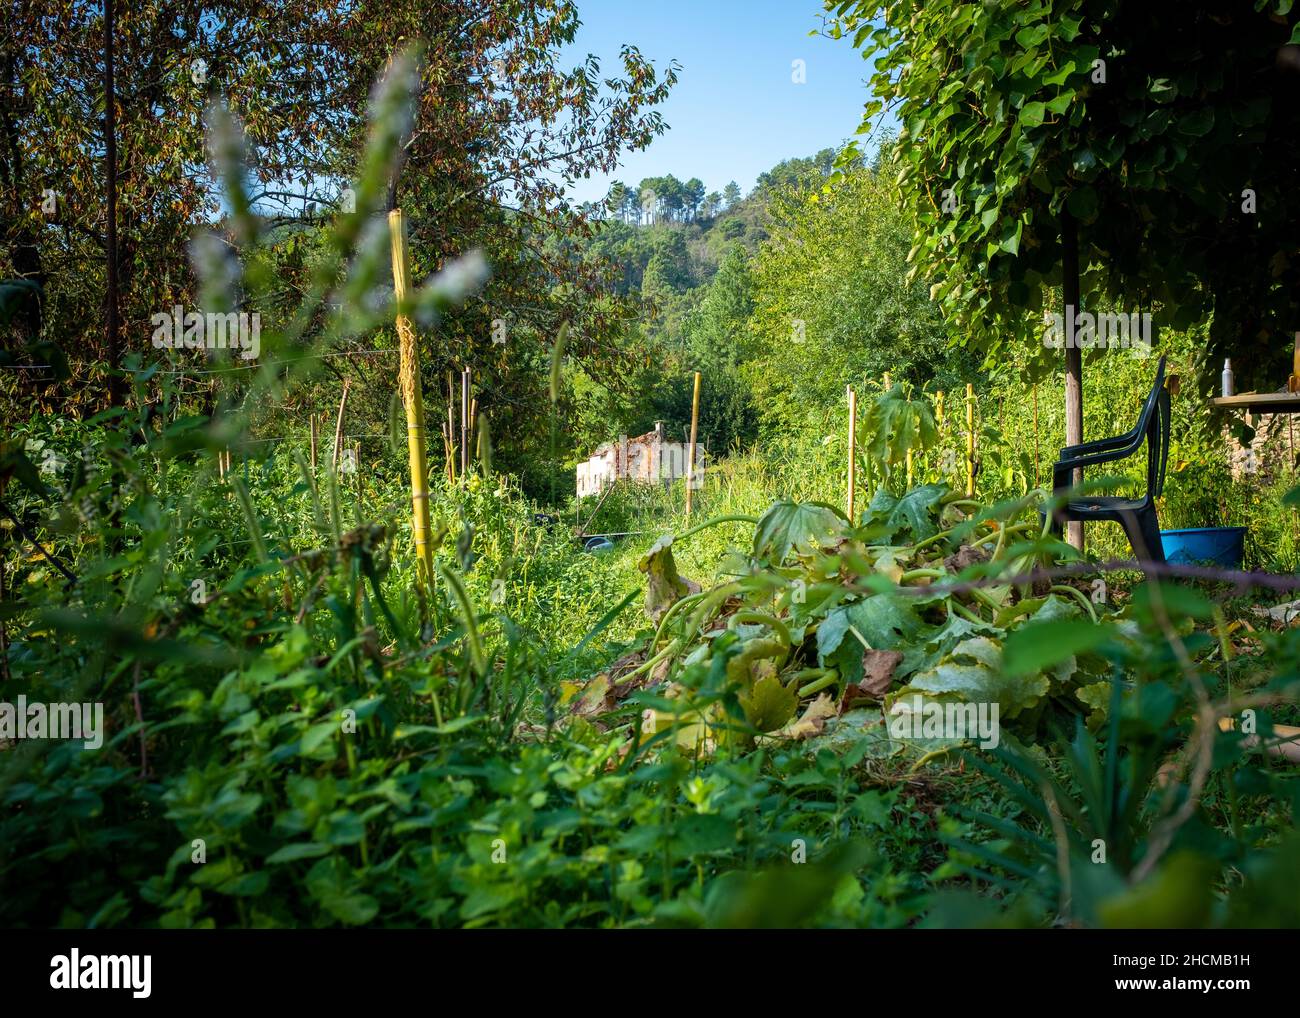 Huerto orgánico situado en el Cevennes (sur de Francia), tomado en una mañana de verano soleada sin gente Foto de stock